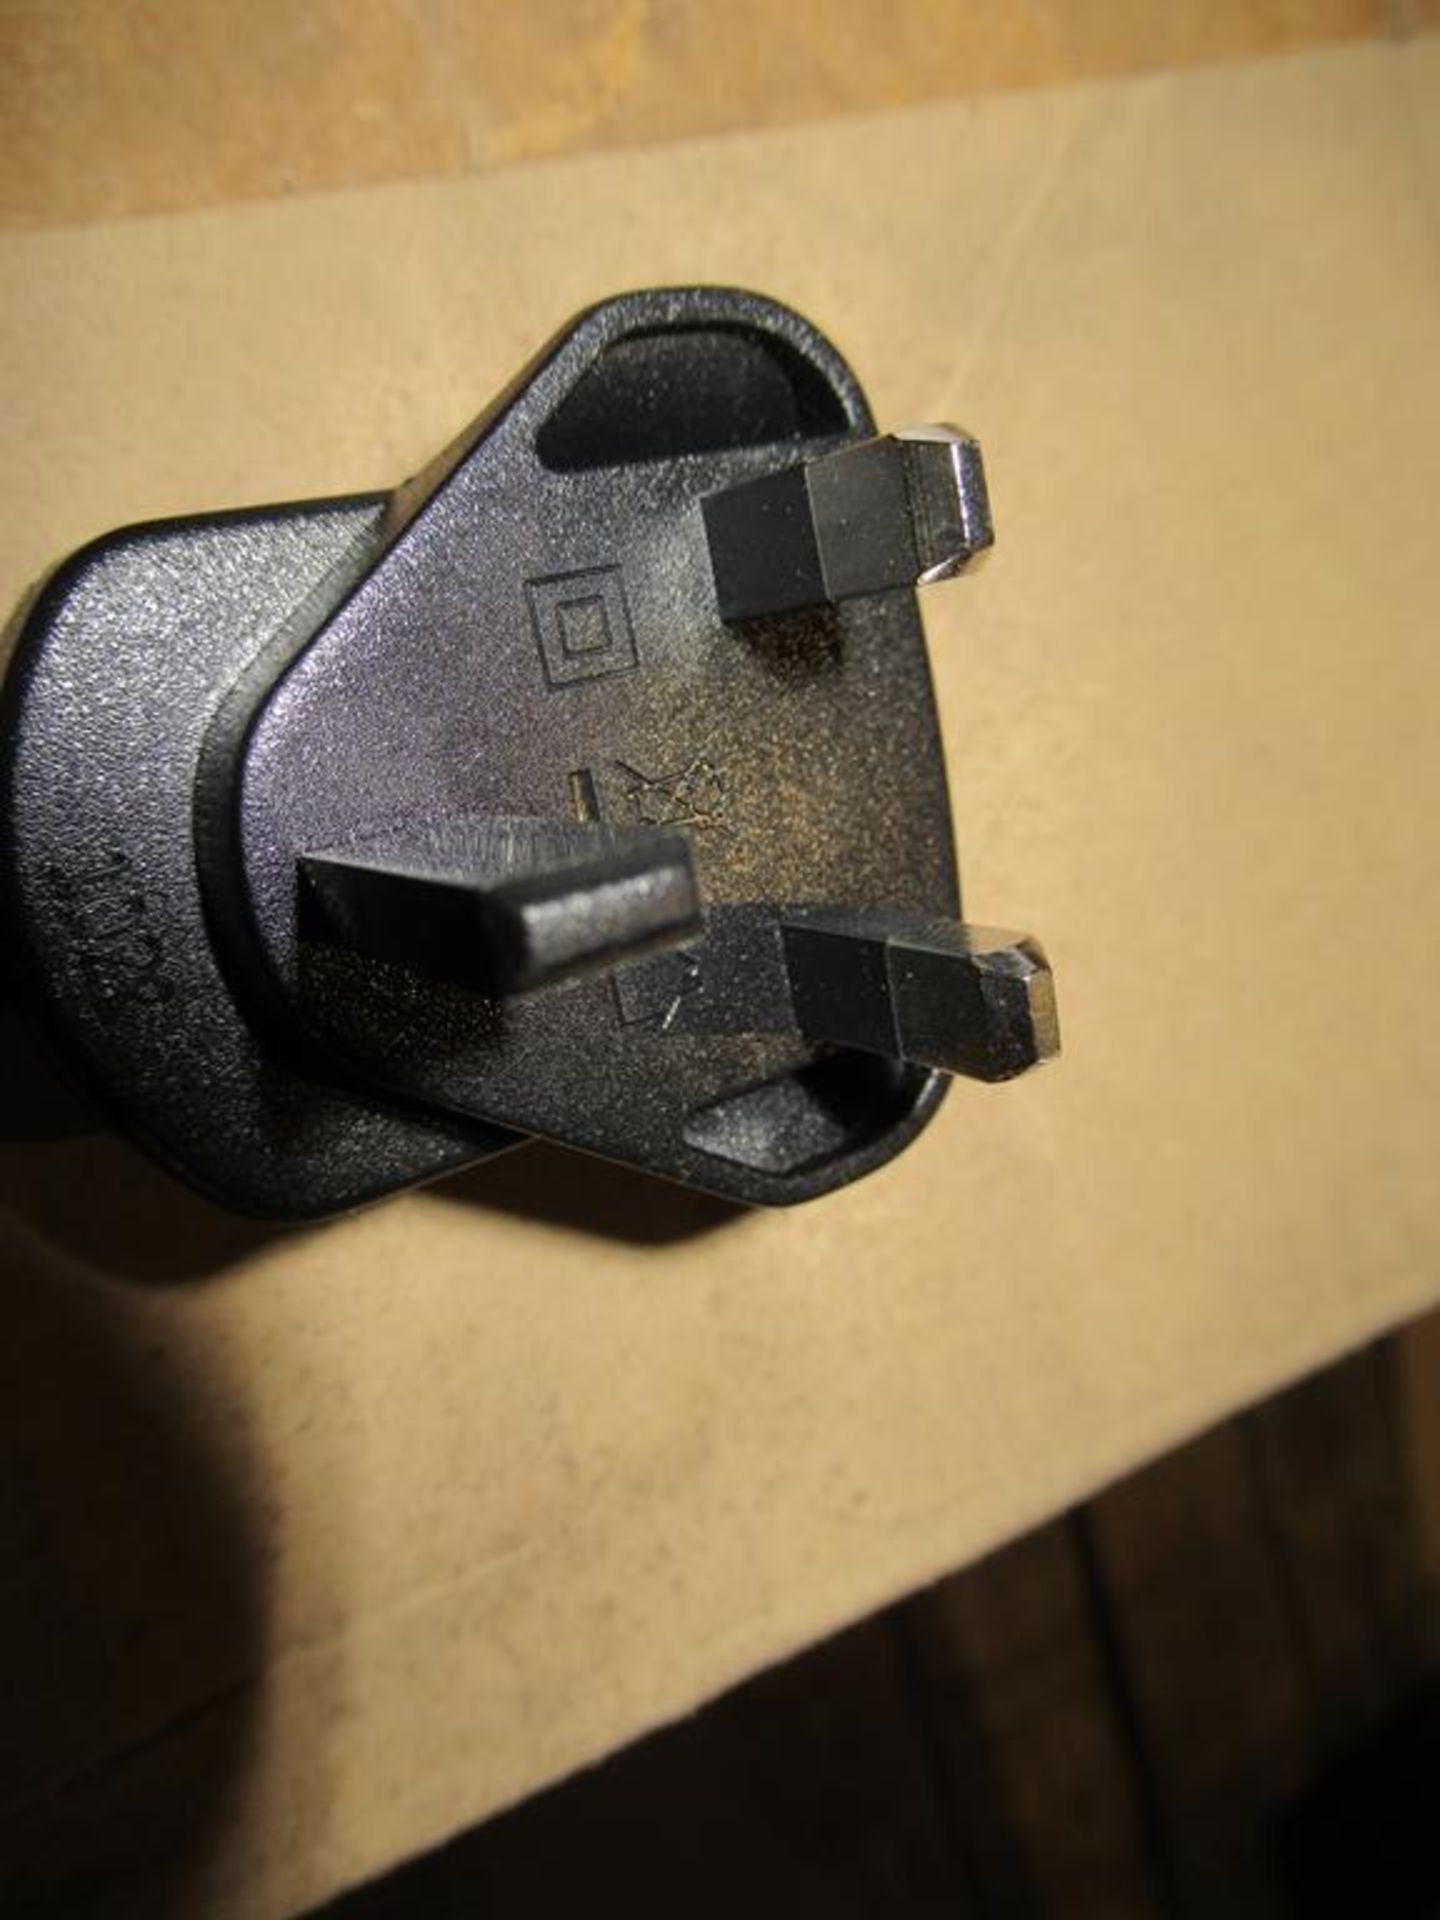 256x UK Plug in Switch Mode Power Supply 9V DC 300mA 2.1x5.5mm DC Powerplug - Image 4 of 5